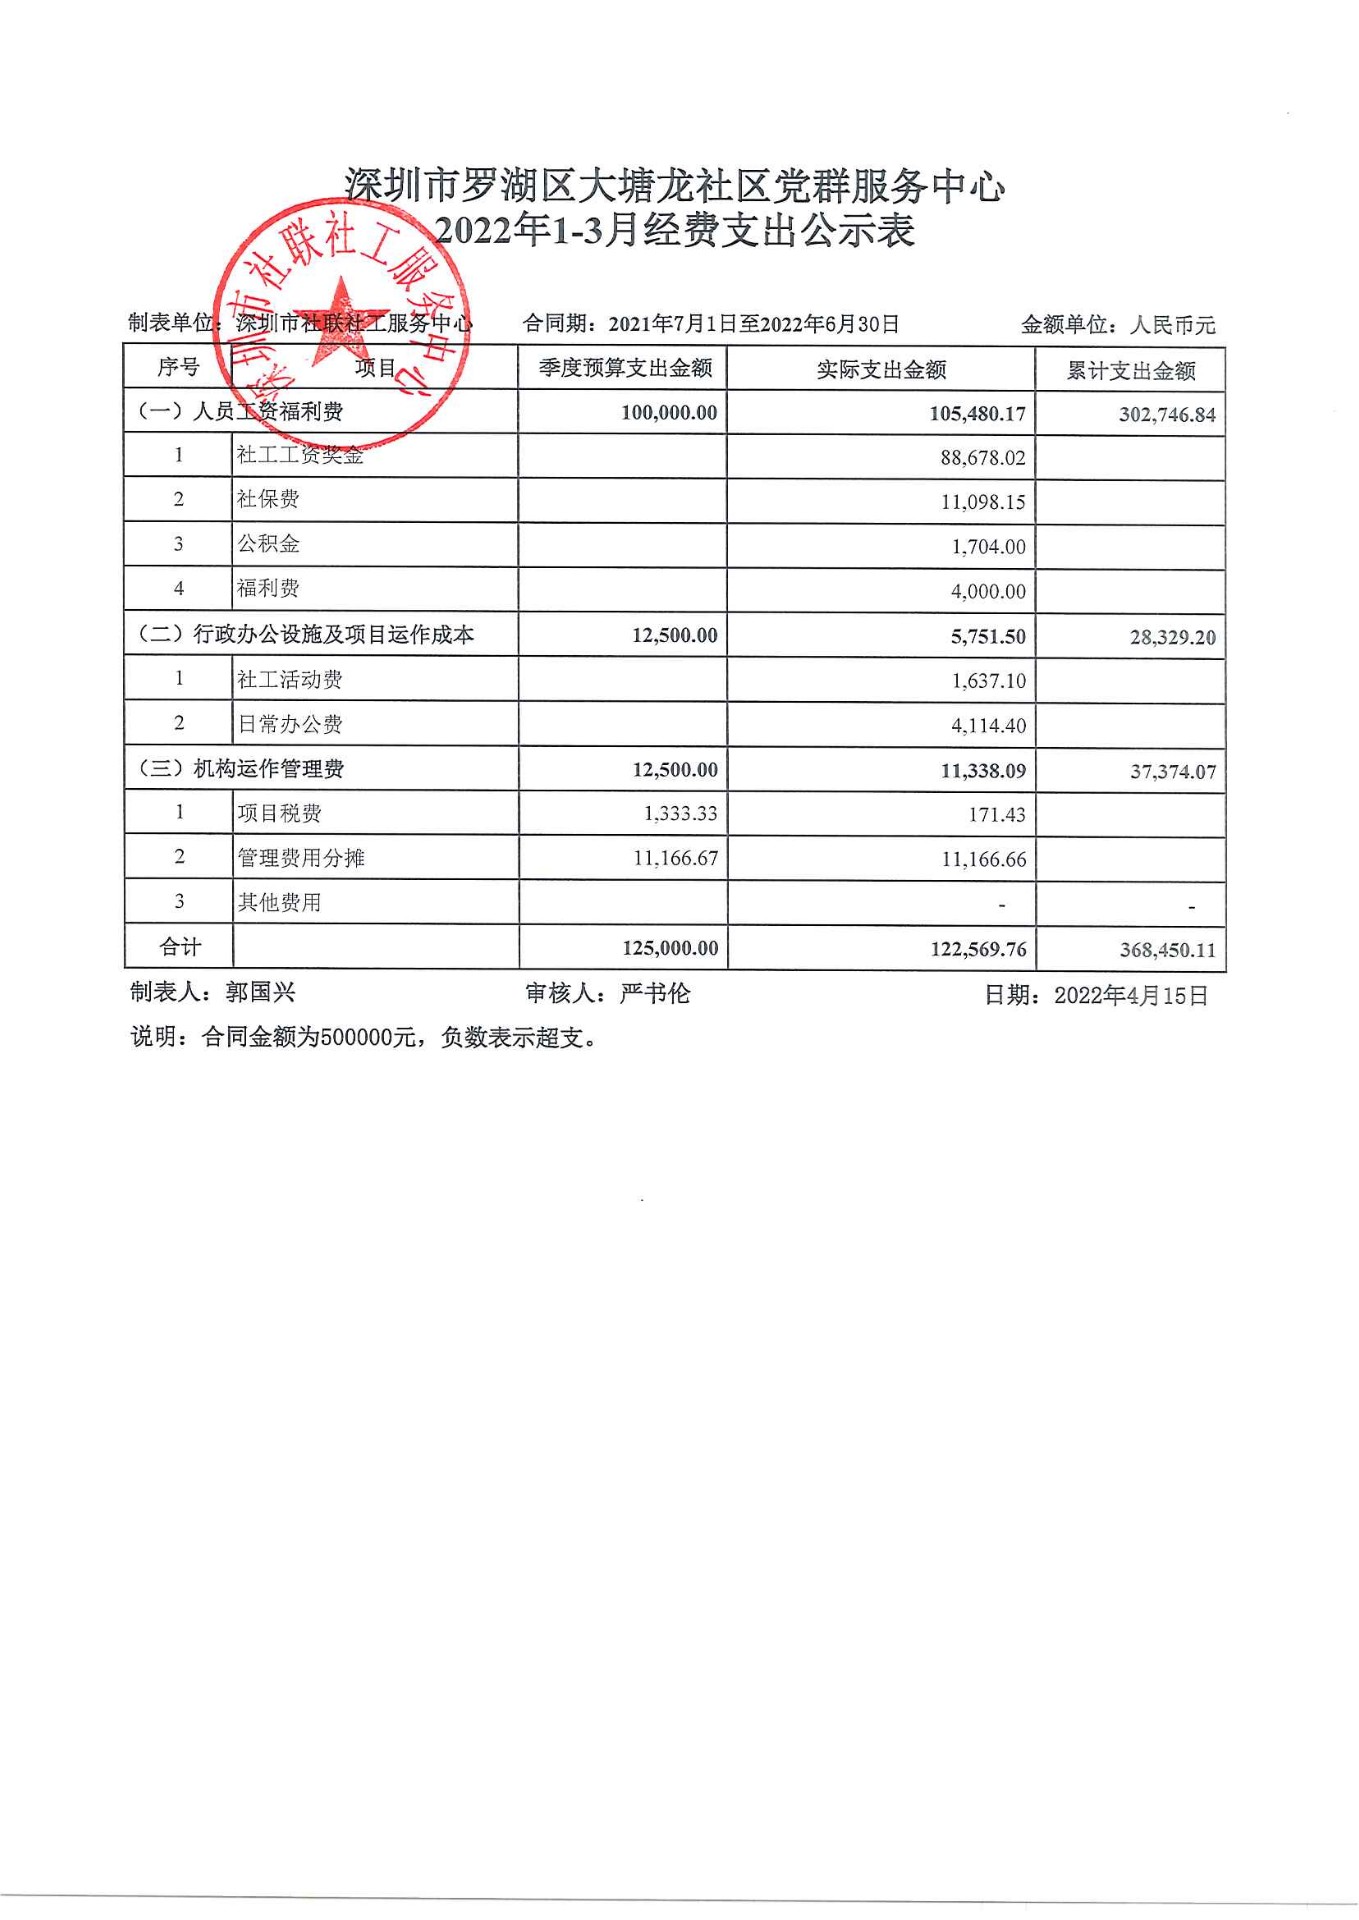 大塘龙社区2022年1-3月财务公示表